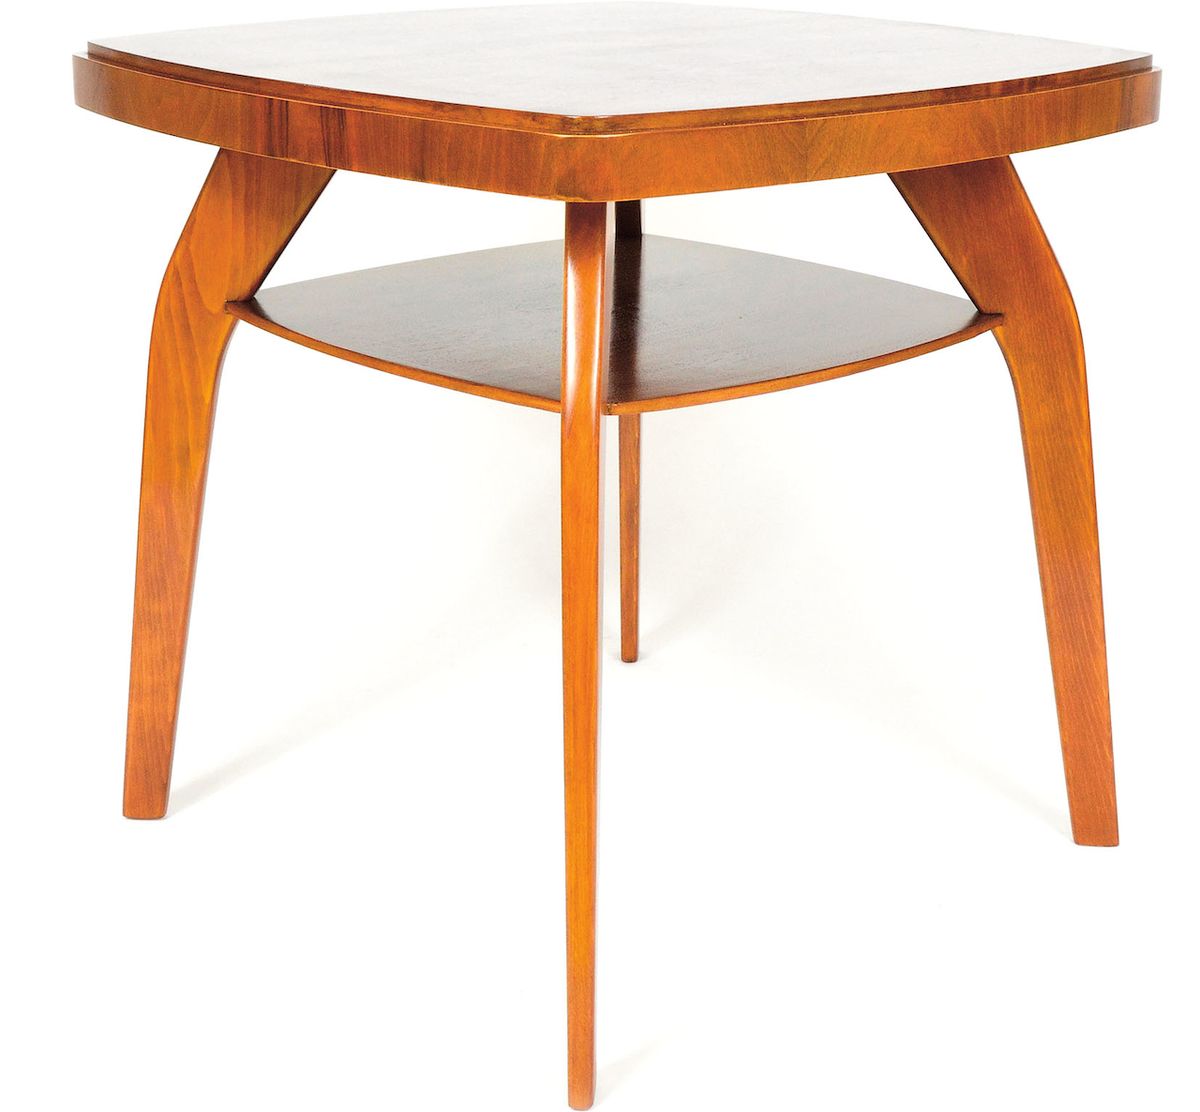 Designově nadčasový konferenční stolek Pavouk od designéra Jindřicha Halabaly.